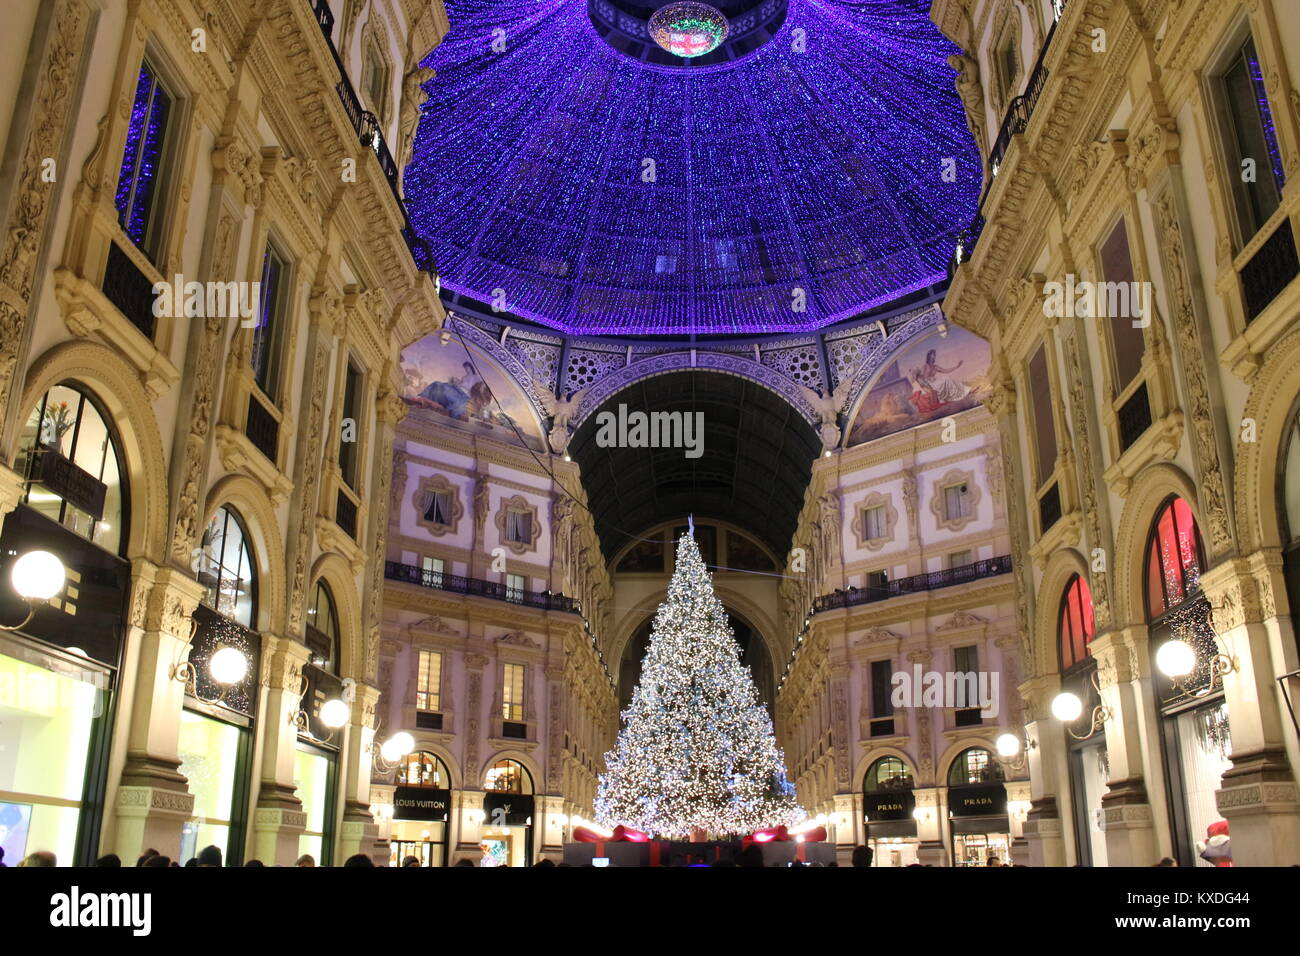 Chirstmas in Milano 2017, Ottagono della Galleria s'illumina per Natale  Stock Photo - Alamy